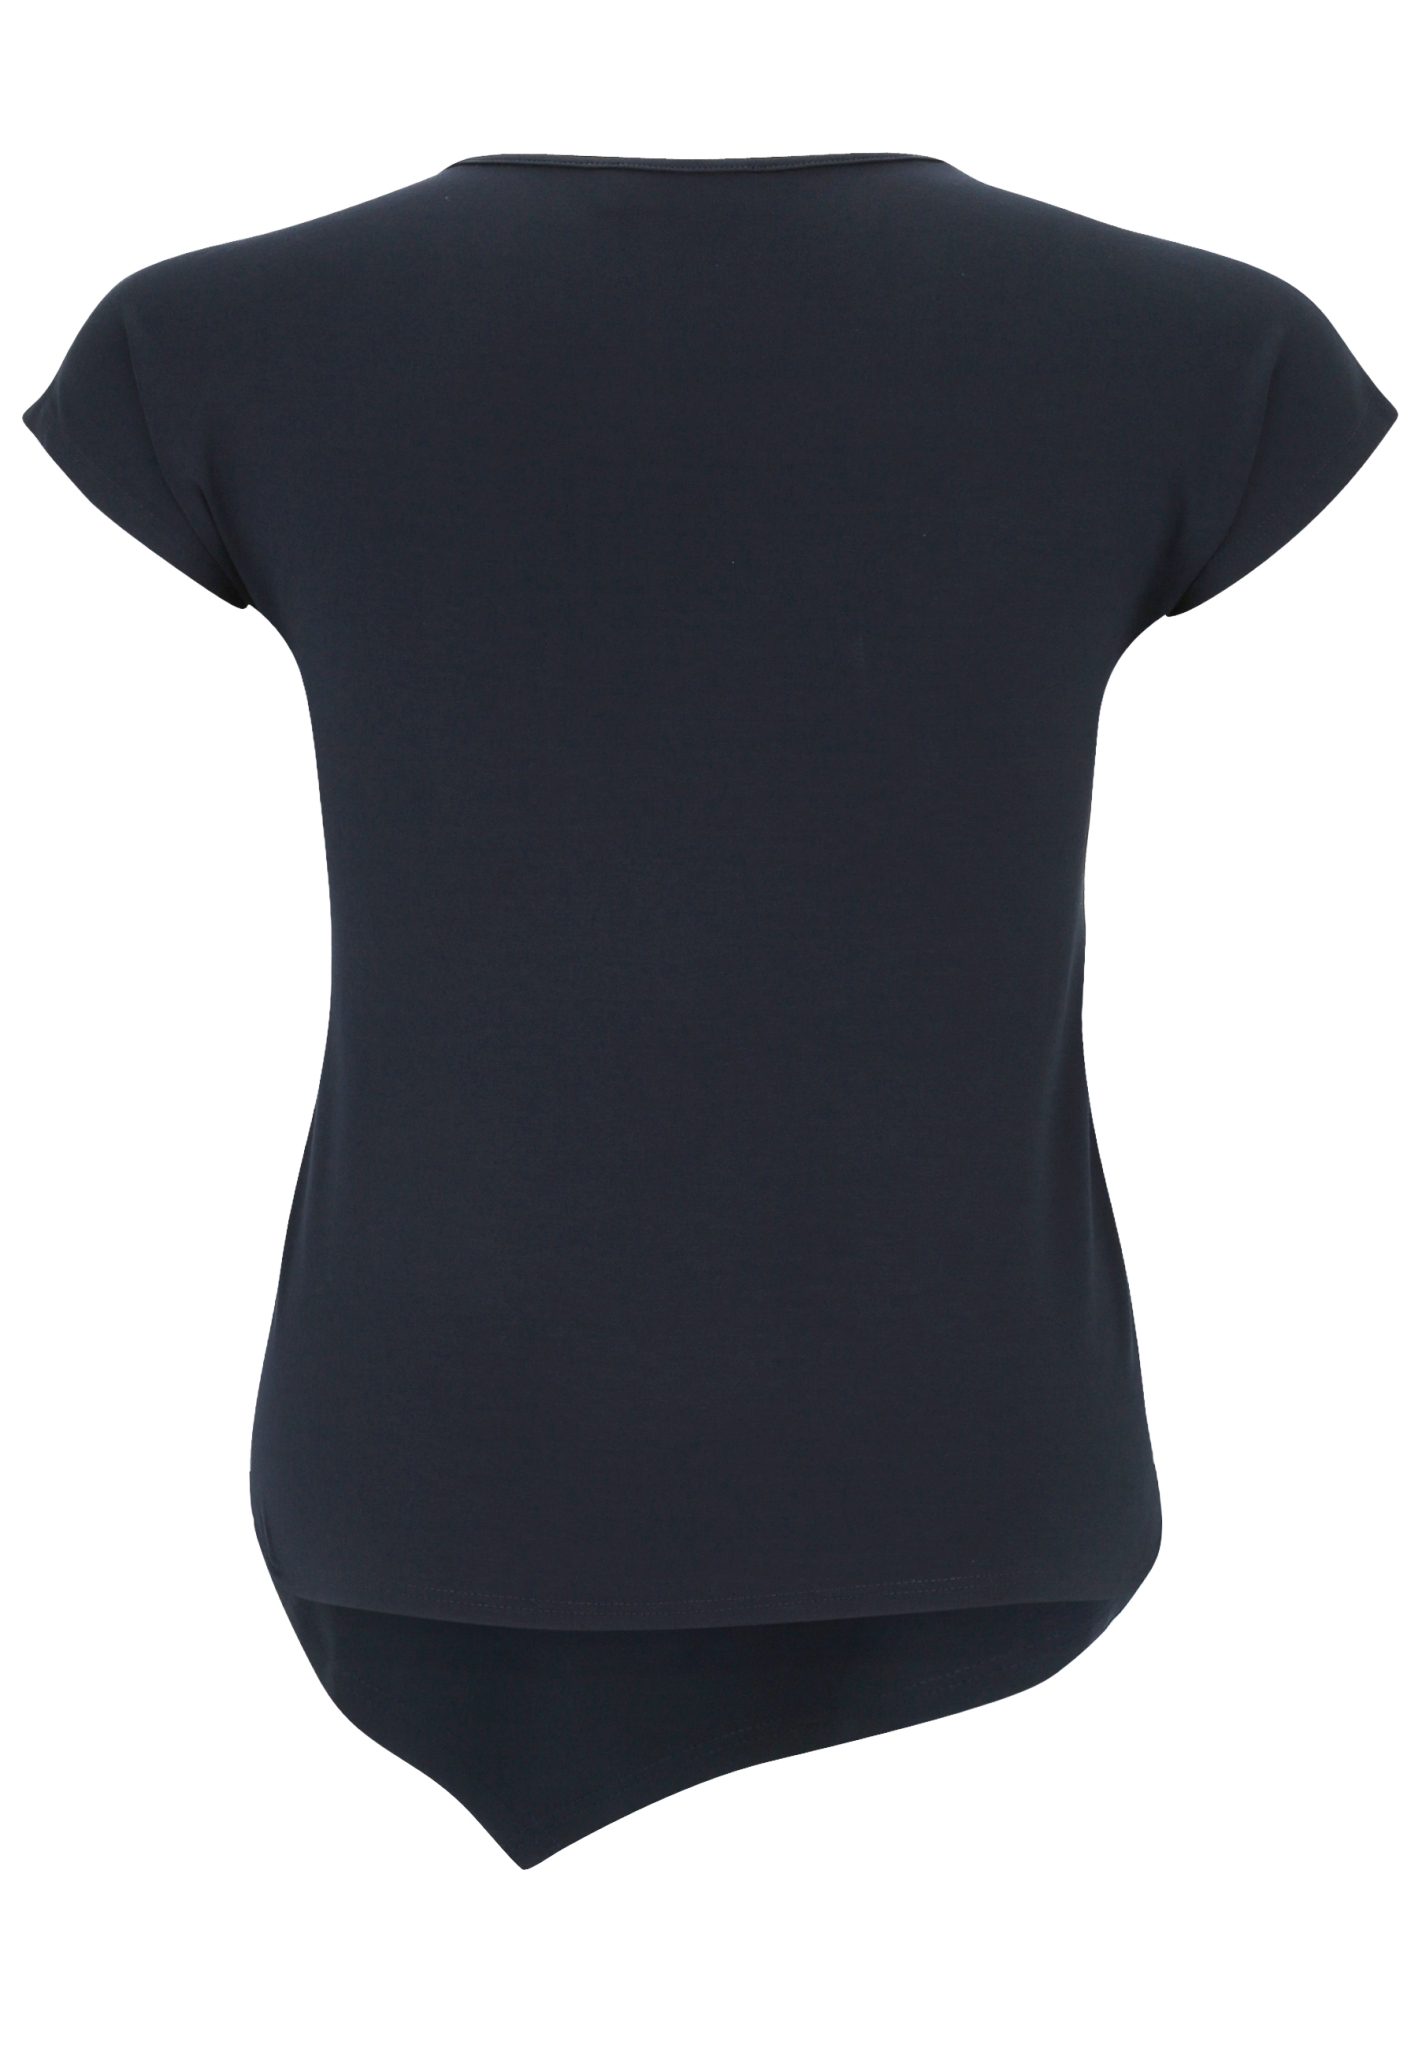 DORIS STREICH T-Shirt mit Grafik-Motiv, asymmetrischem Saum und Kurzarm 10705764